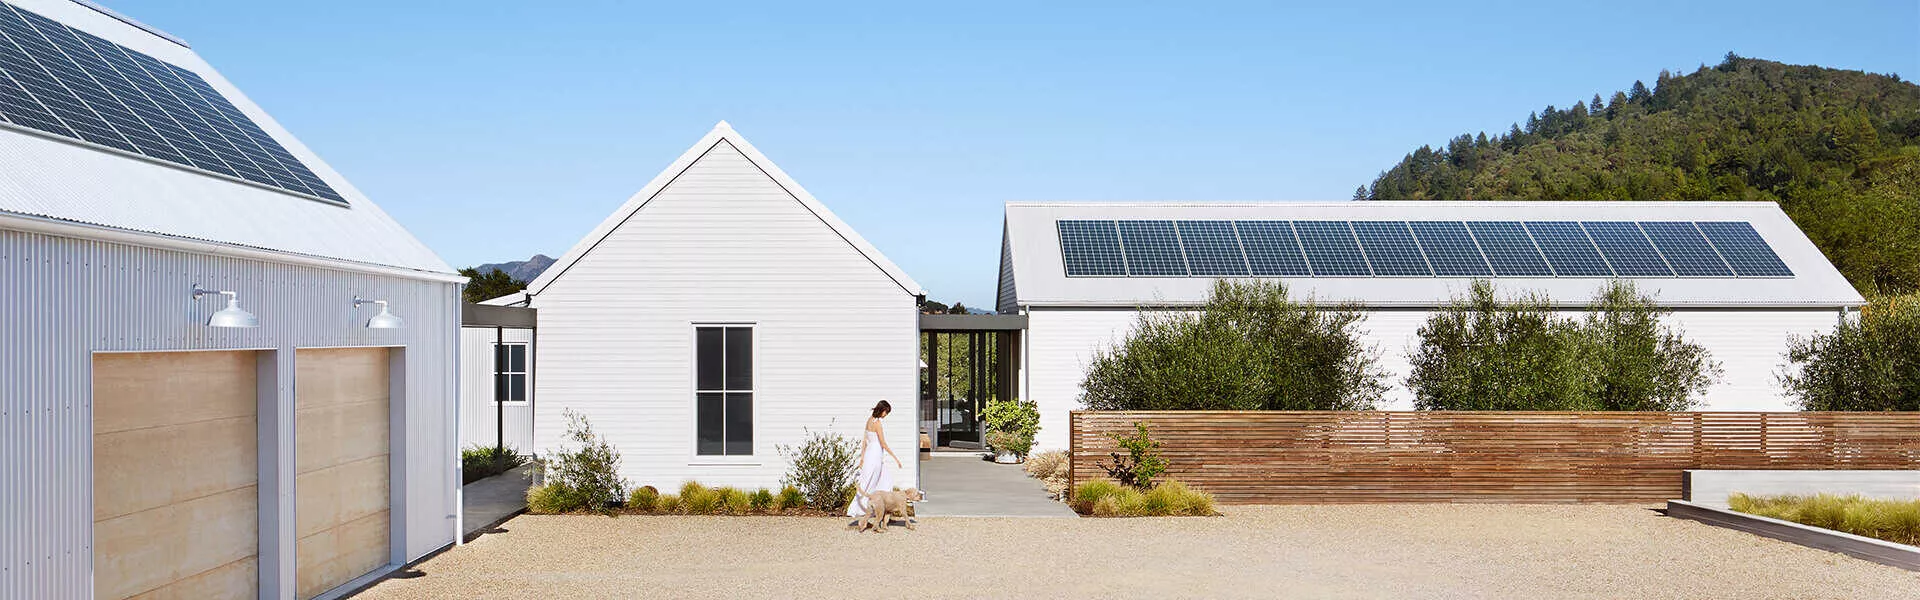  granero y casa con paneles solares